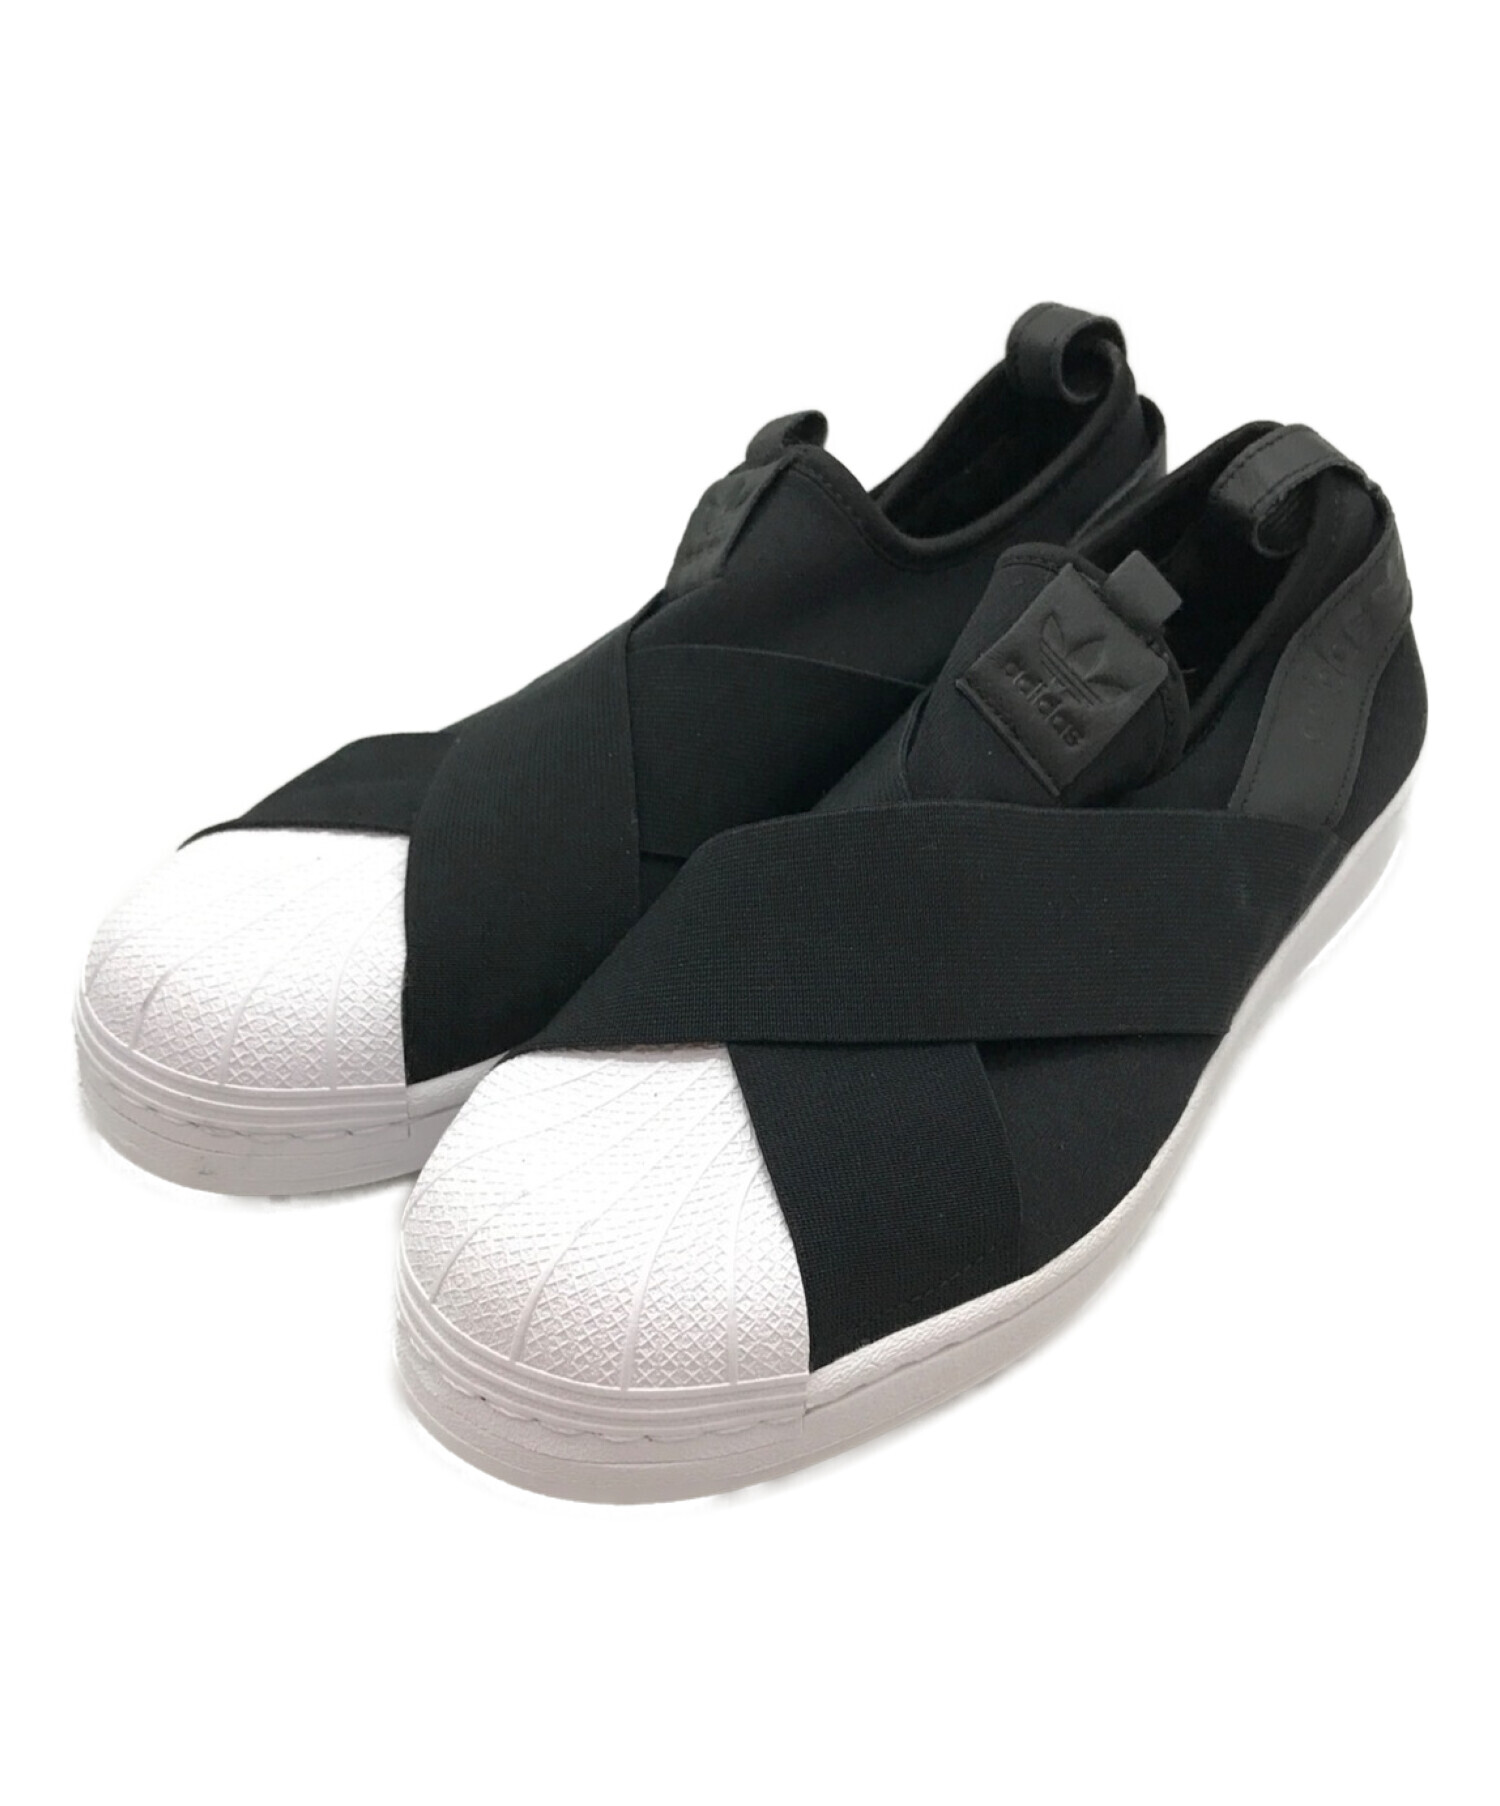 adidas アディダス メンズ スニーカー 【adidas Supe sta 】 サイズ US_9(27.0cm) Thin St ipes  White Black スニーカー